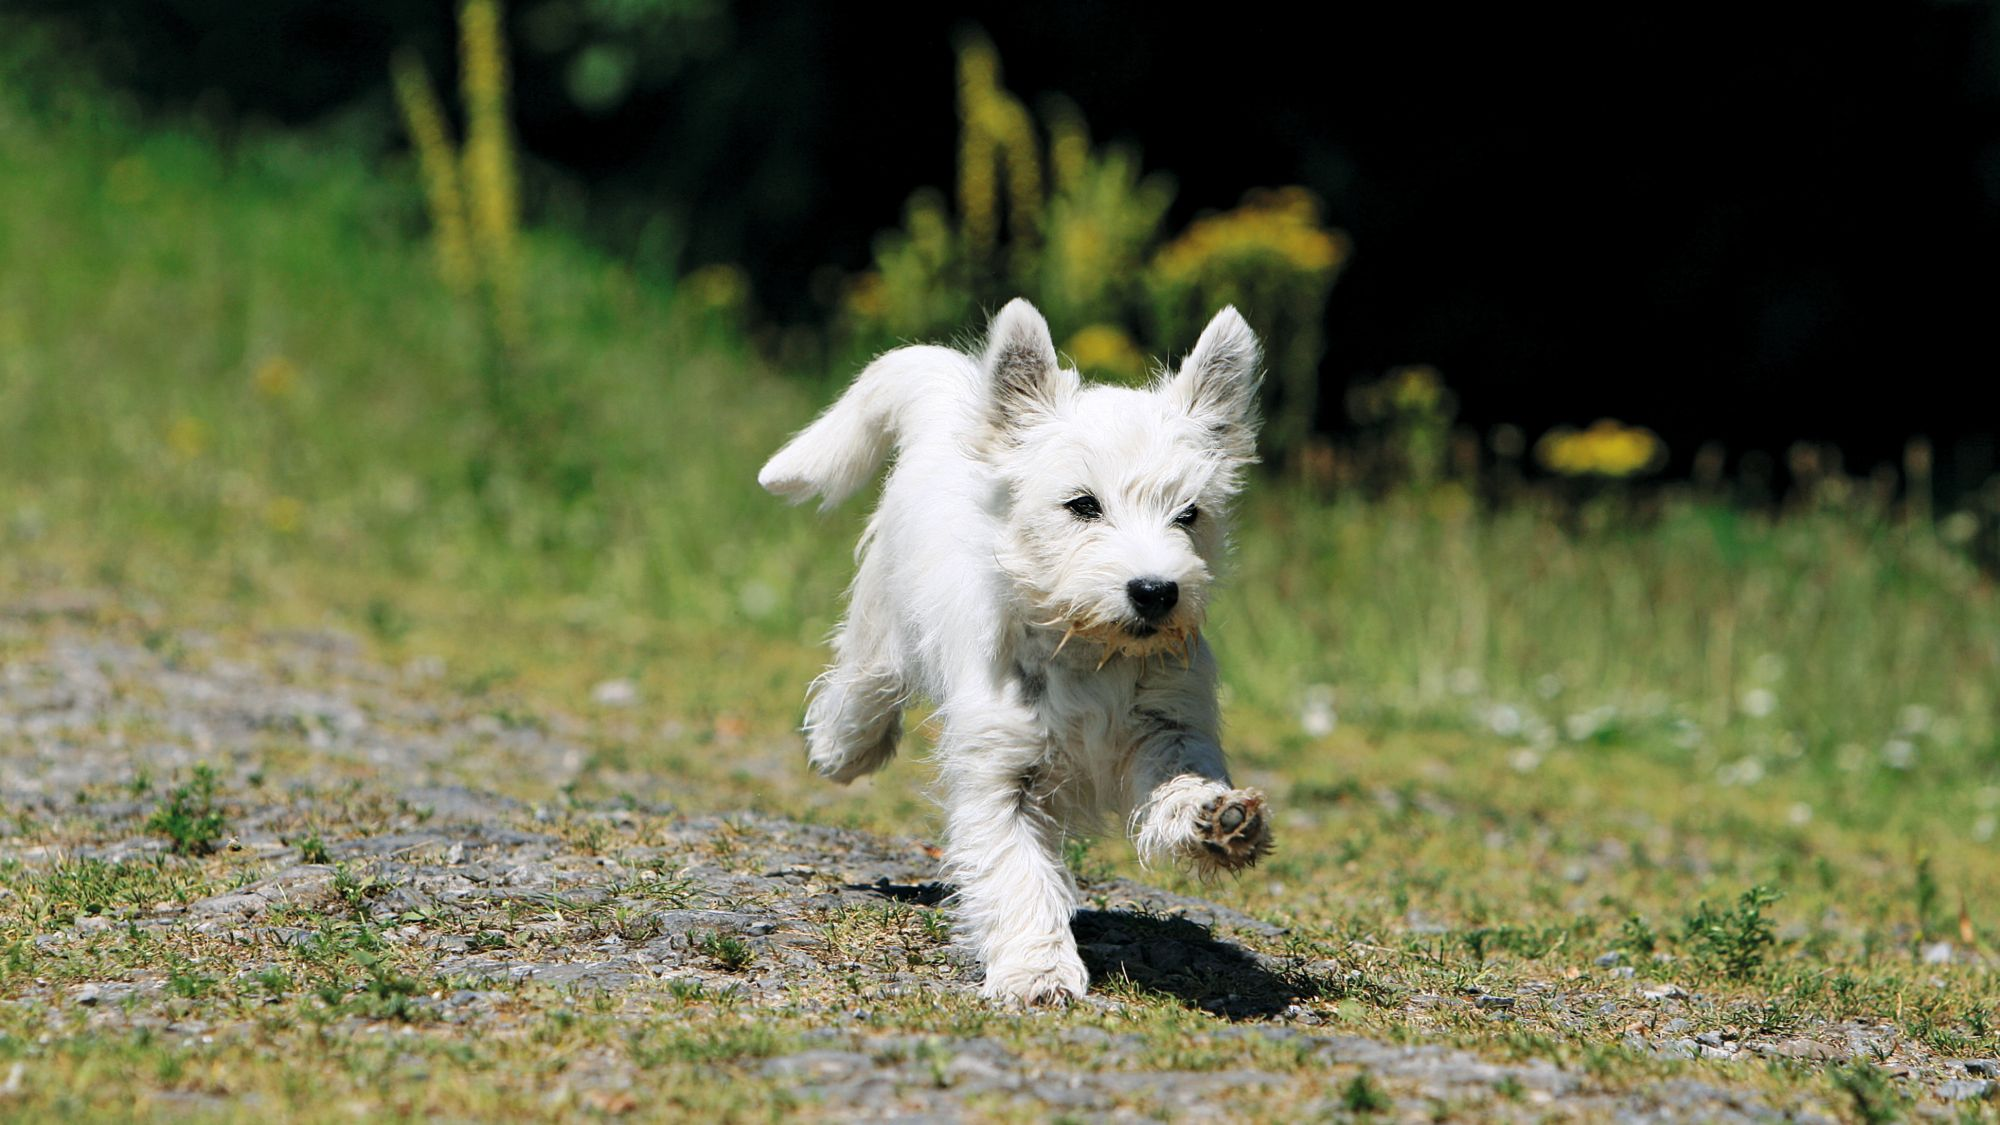 West Highland White Terrier bounding across green land